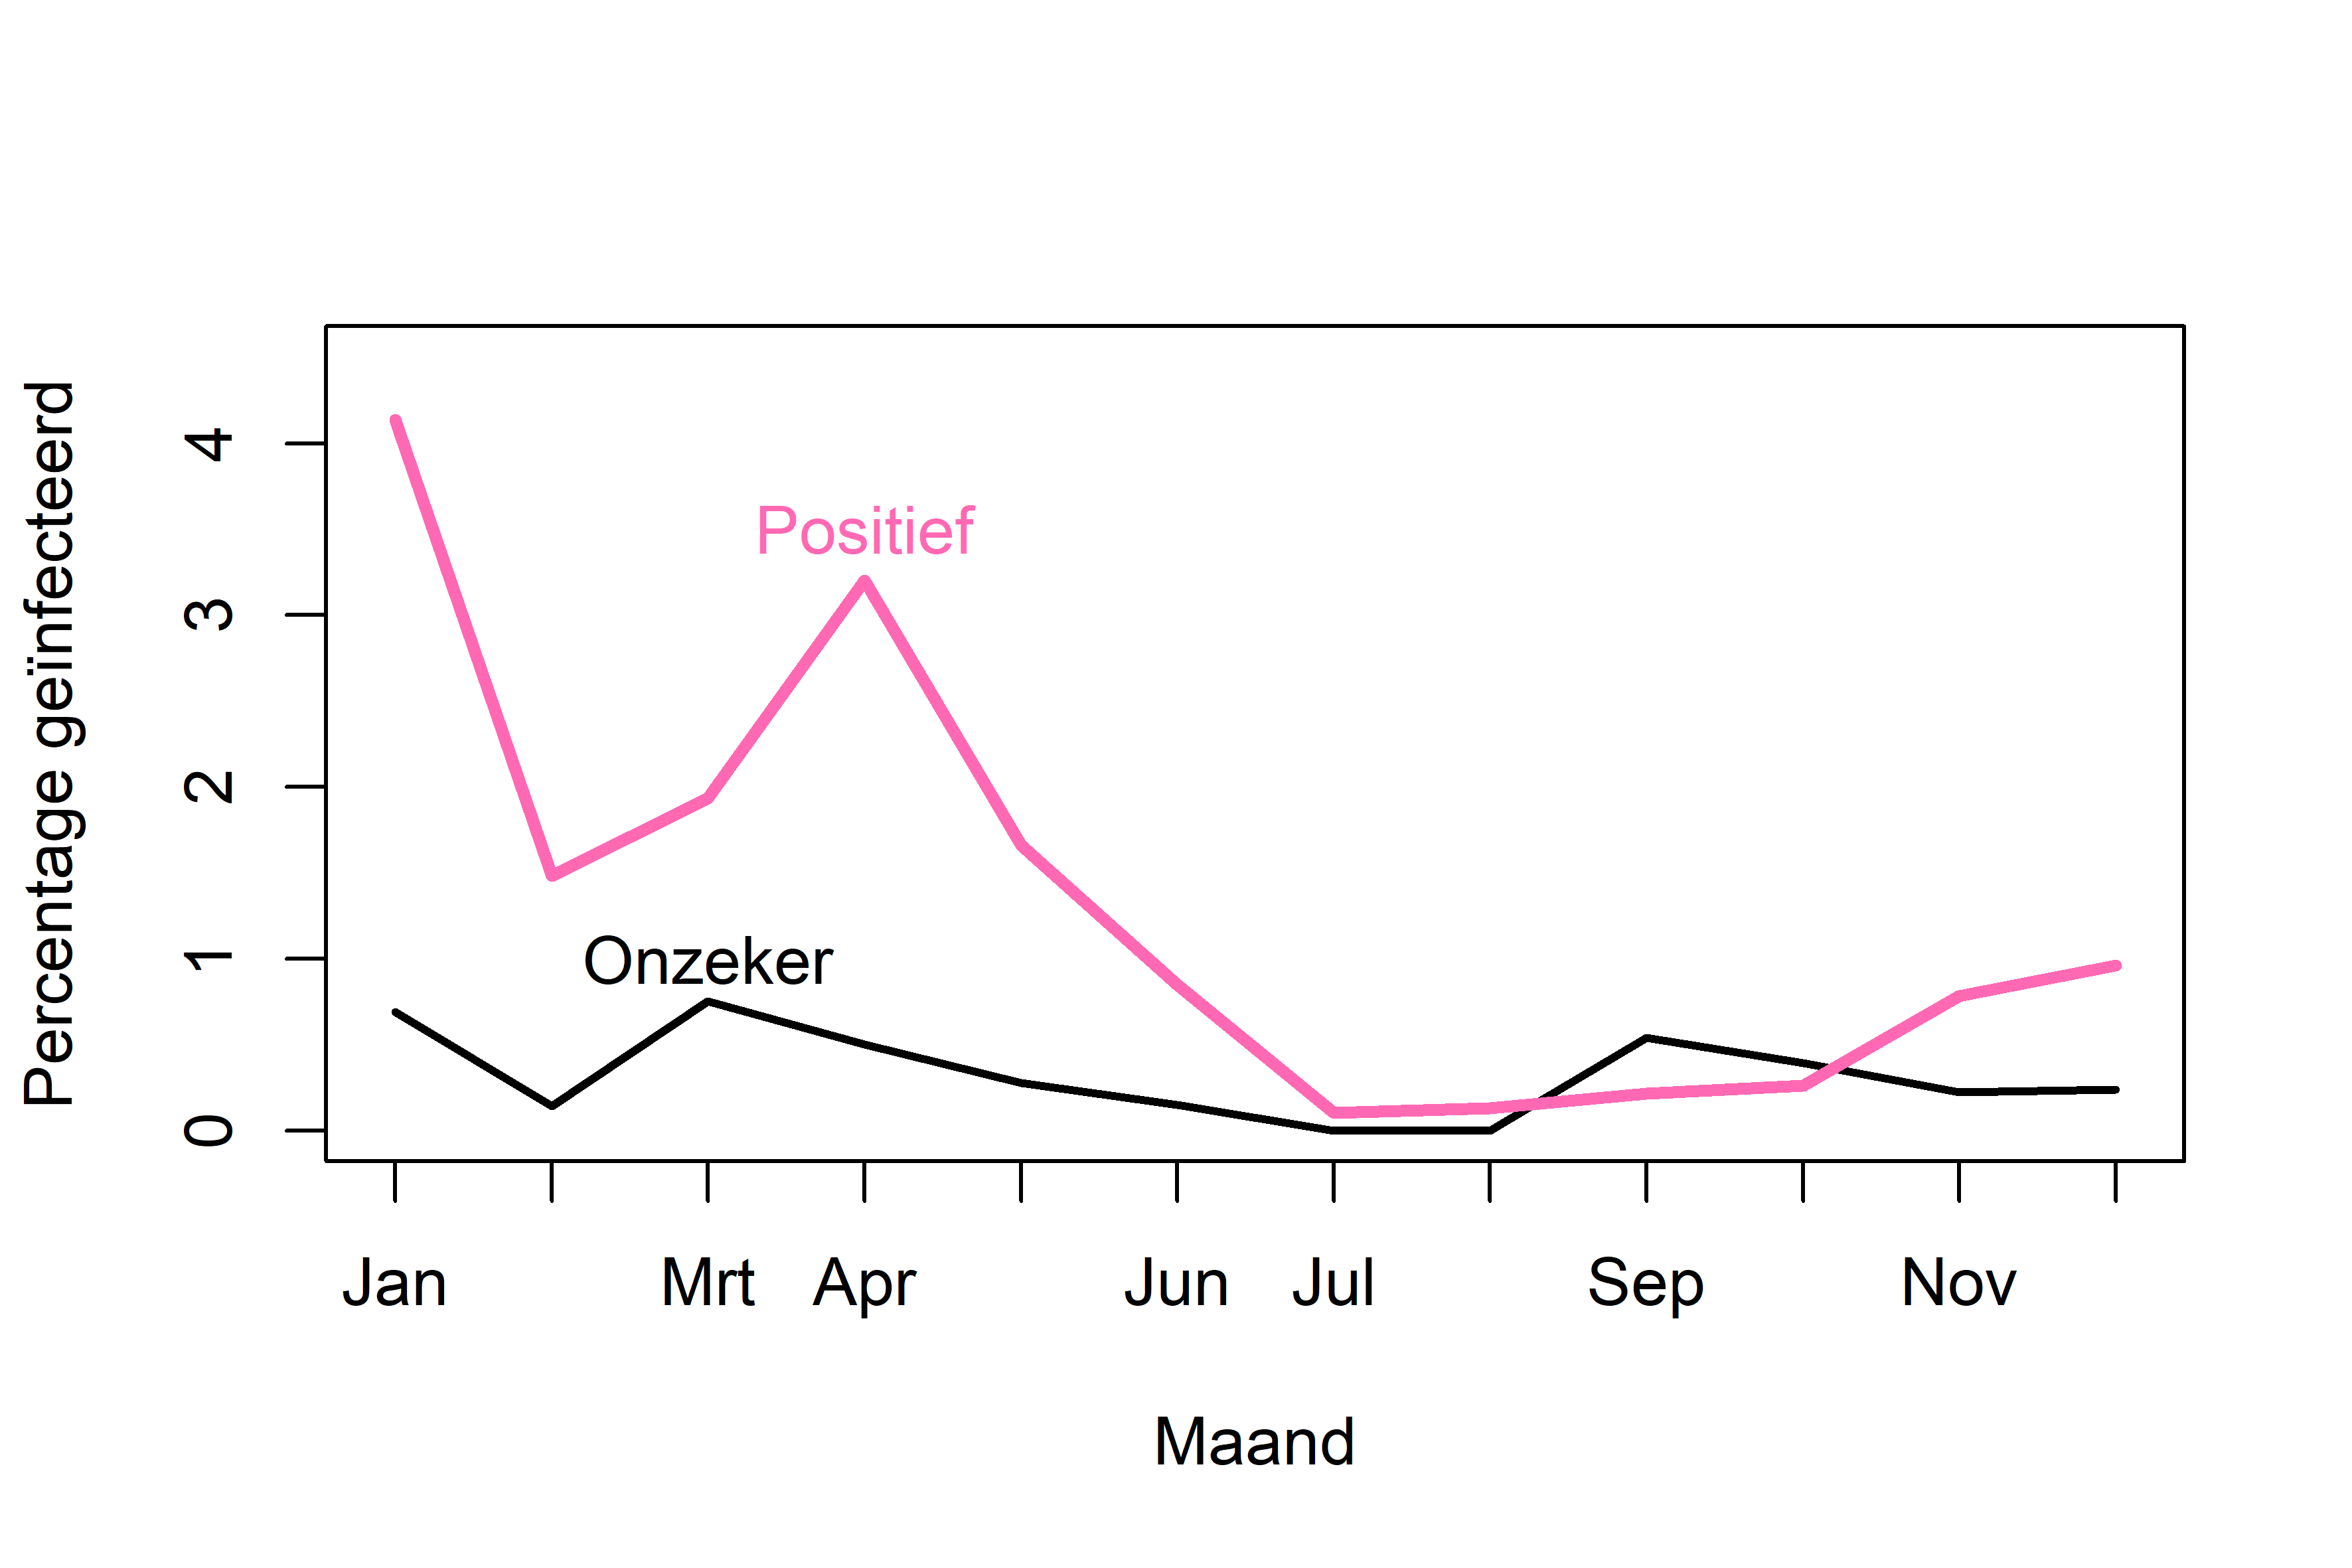 Percentage geïnfecteerde (roze) en onzekere (zwart) muskusratten per maand.